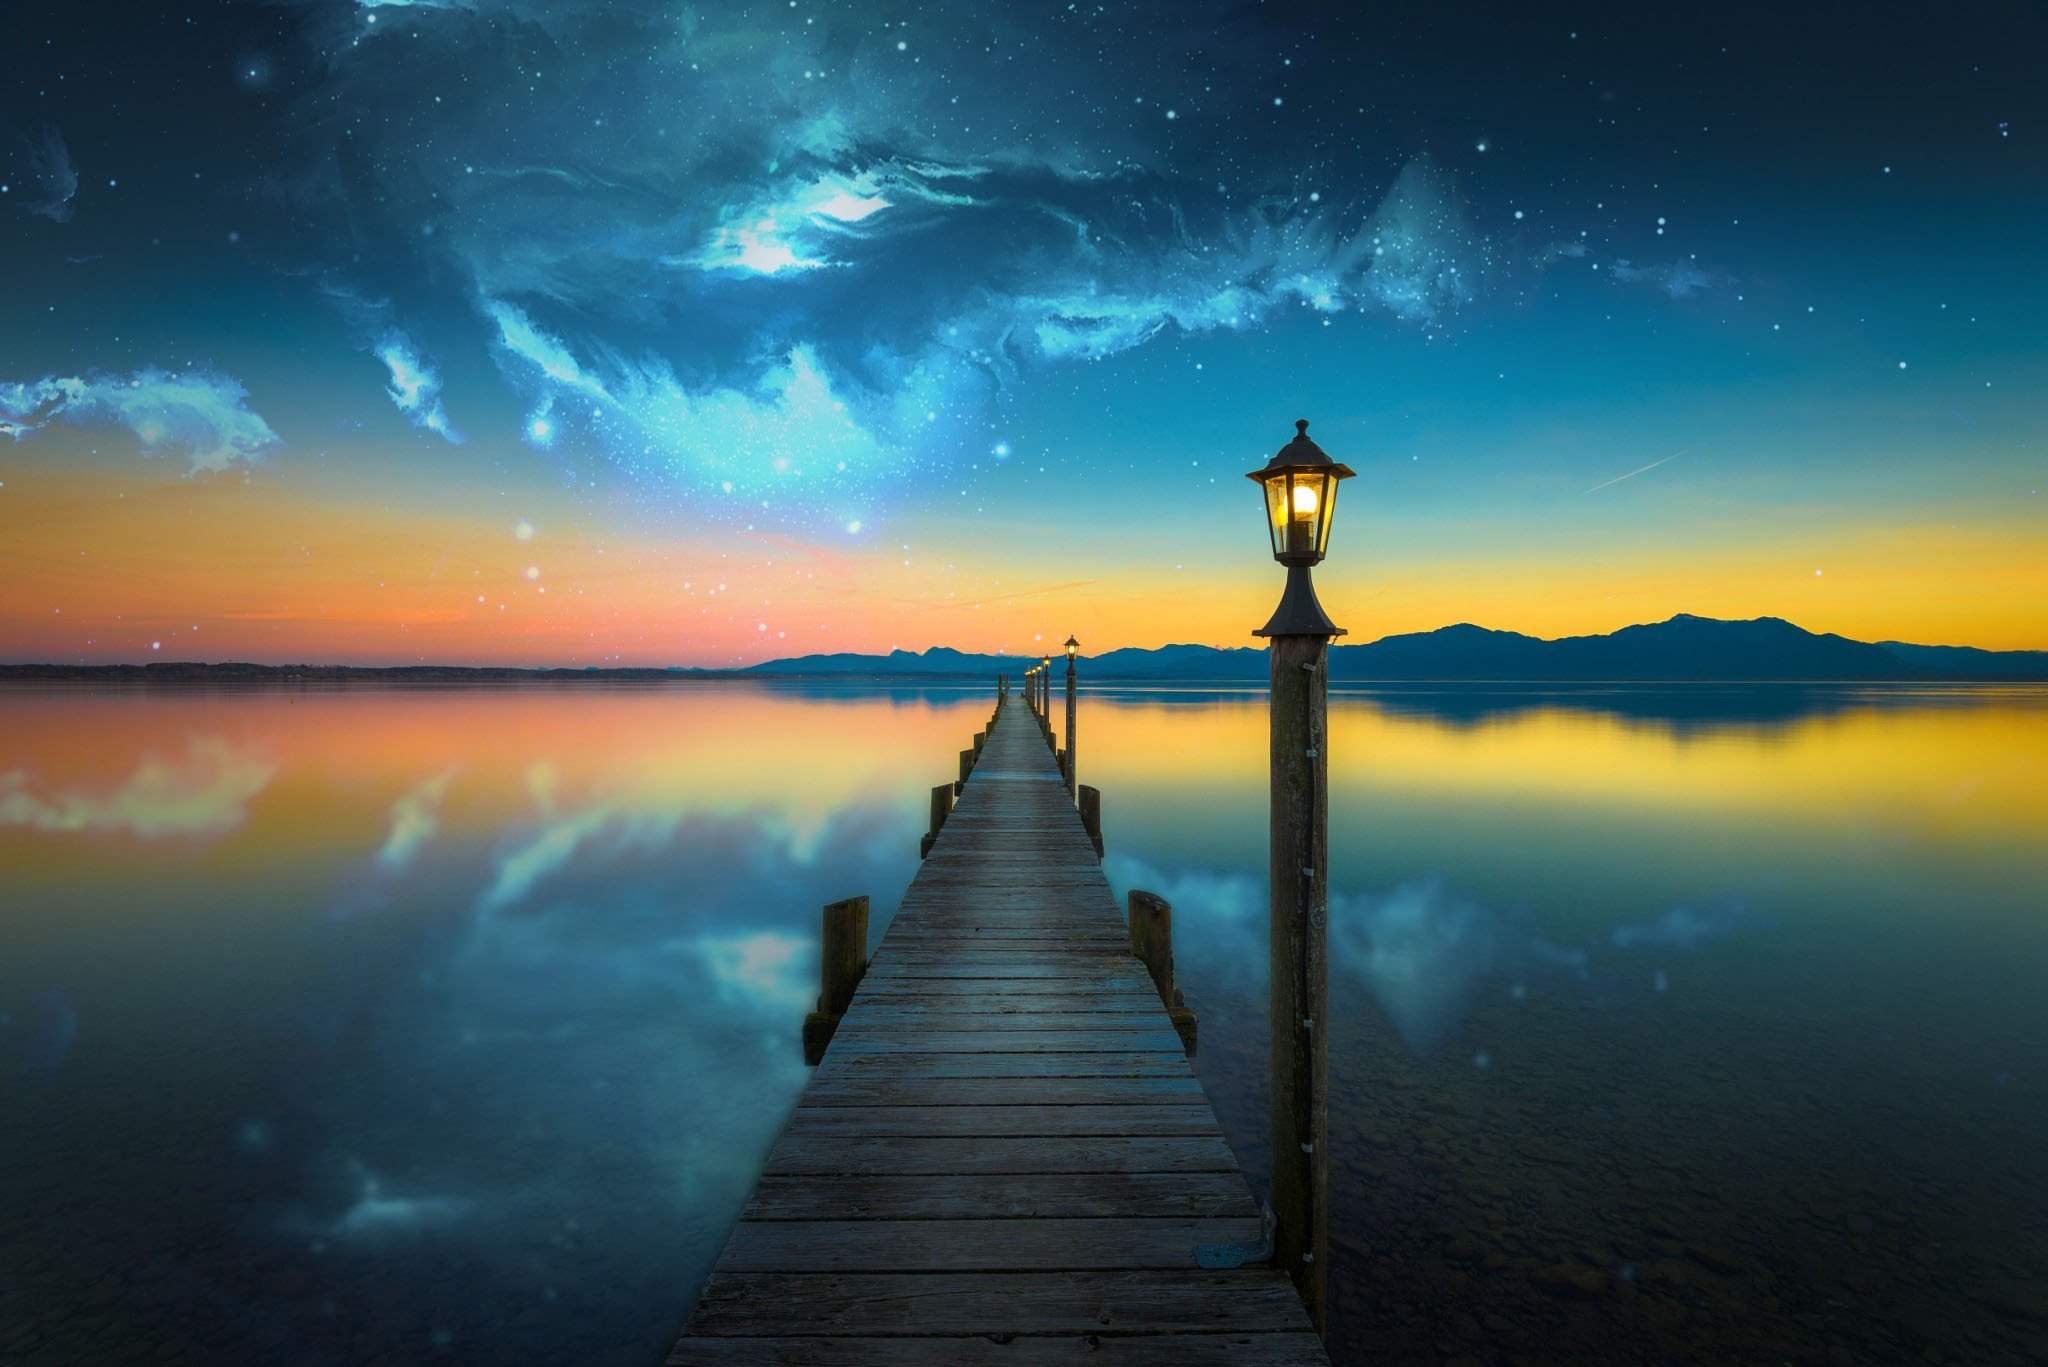 nebula, Space, Lake, Evening, Photo manipulation, Bridge ...